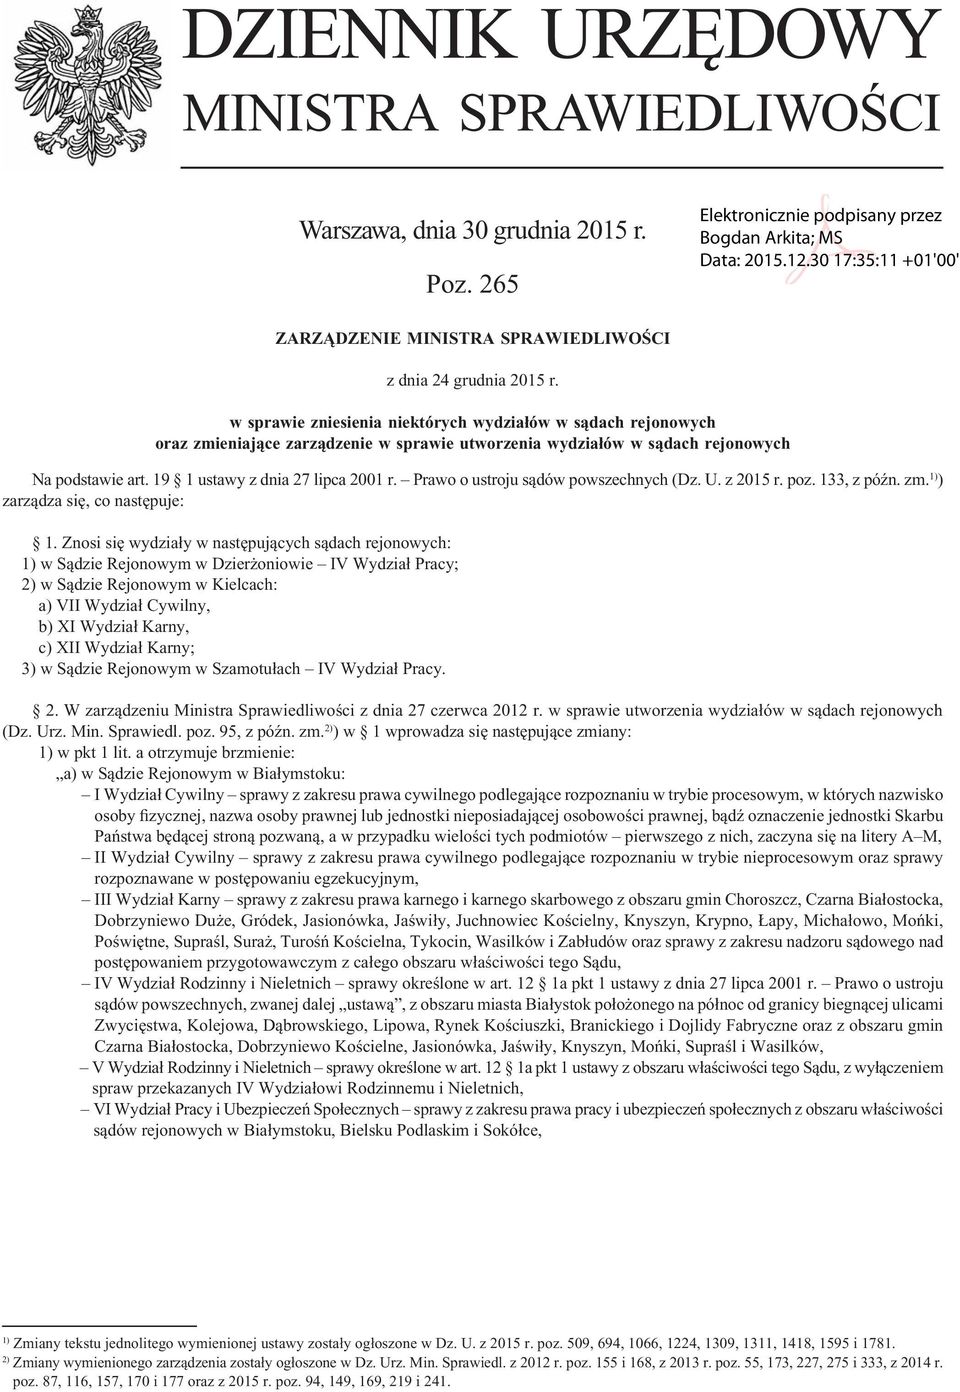 DZIENNIK URZĘDOWY MINISTRA SPRAWIEDLIWOŚCI - PDF Free Download